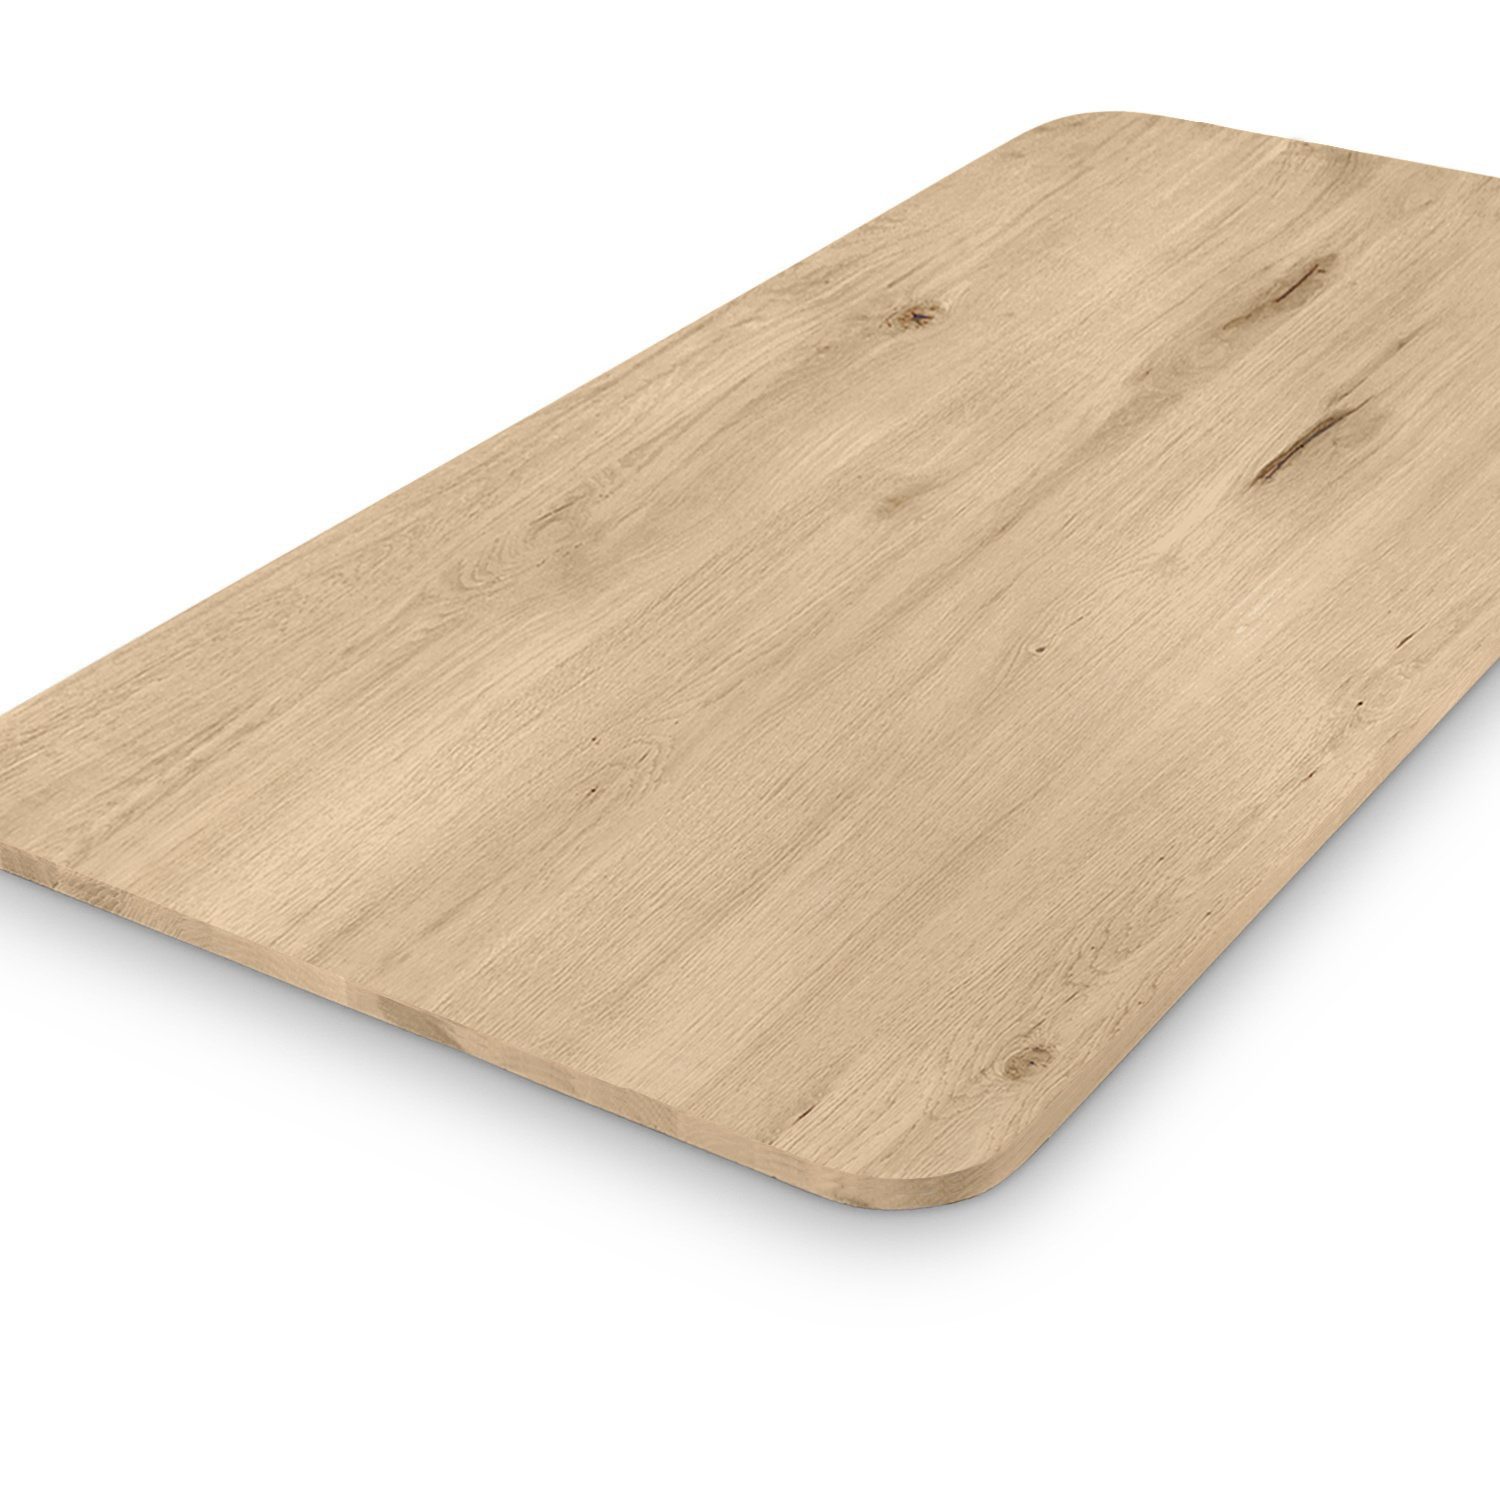  Tischplatte Wildeiche - mit runden Ecken - nach Maß - 2,5 cm dick (1-Schicht) - XXL Lamellen (14-20 cm breit) - Asteiche (rustikal) - verleimt & künstlich getrocknet (HF 8-12%) - mit abgerundeten Kanten - 40-117x80-250 cm